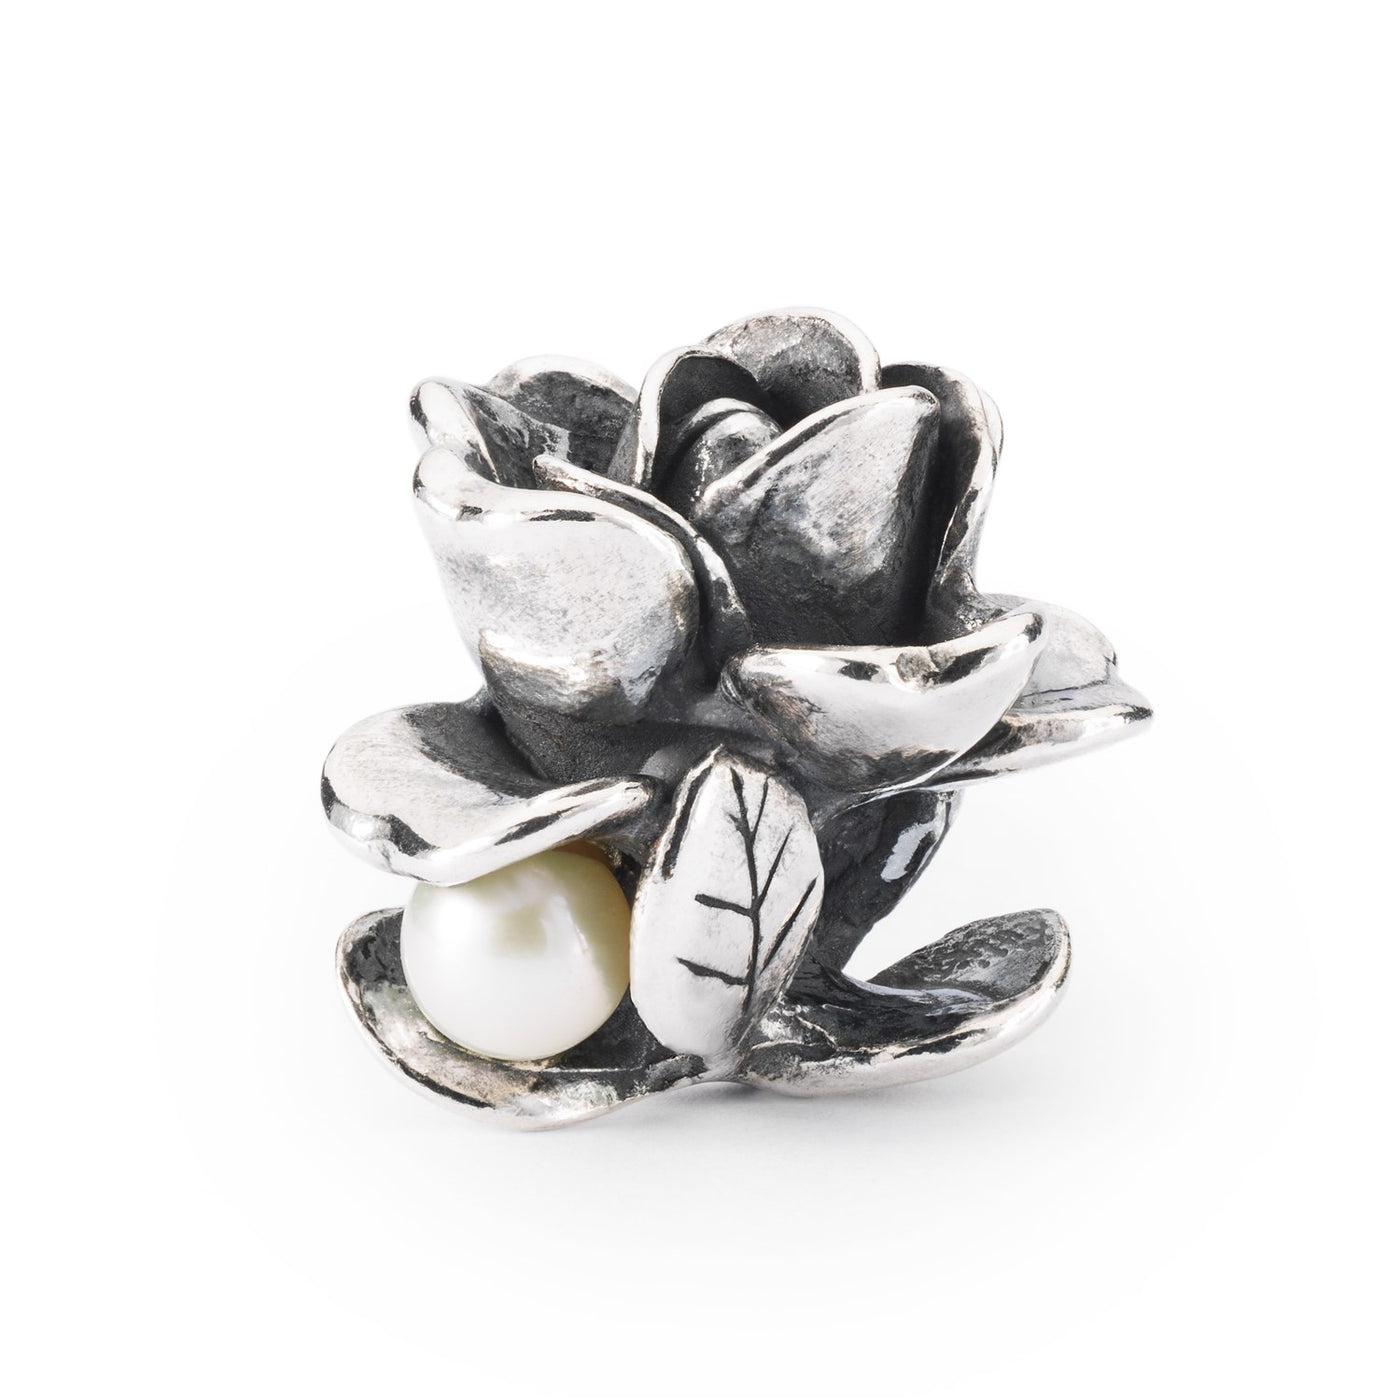 Juni rose kugle, med en smukt detaljeret design af en rose i fuldt flor, lavet af sølv med en lille  hvid perle. Perfekt til at tilføje et strejf af natur til dit smykke.